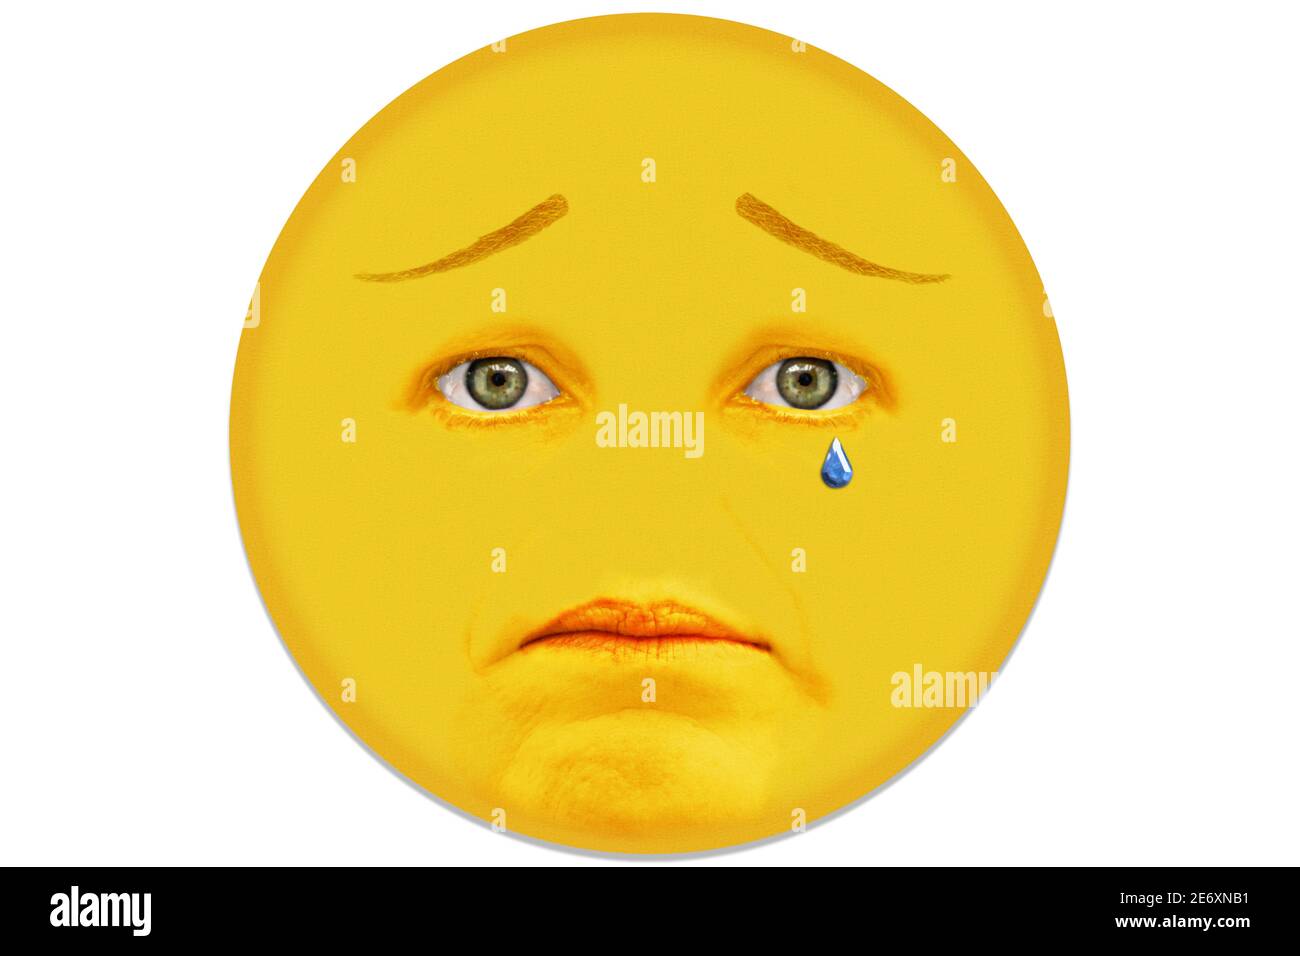 Una cara amarilla de una mujer de mediana edad muestra la emoción de la tristeza. La cara no tiene nariz. Foto de stock